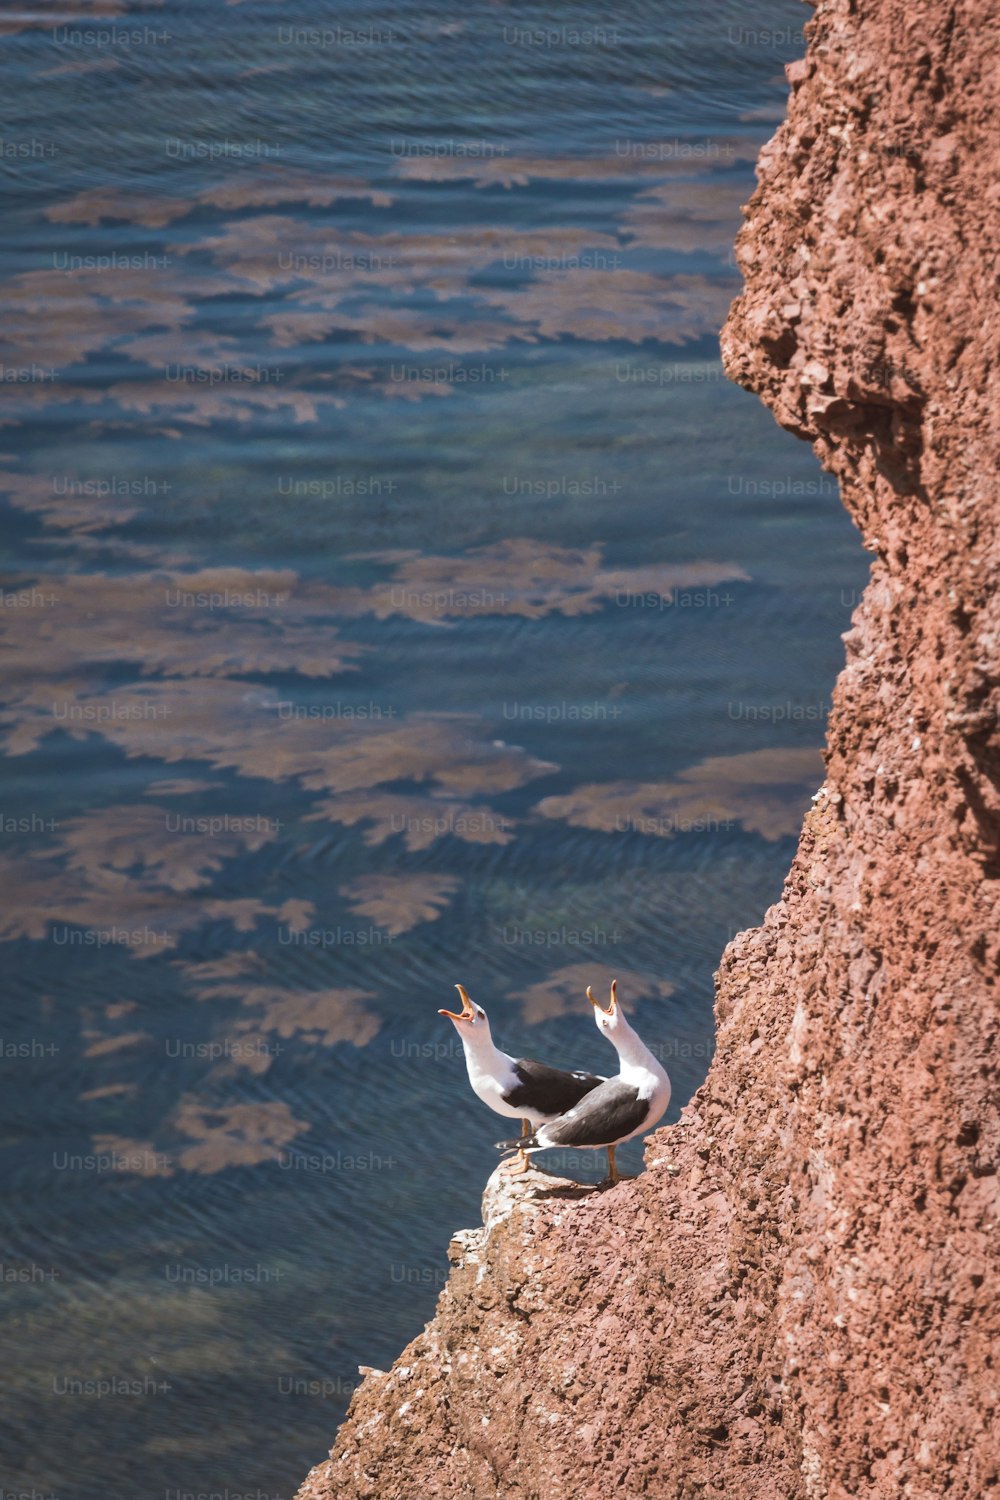 갈매기 두 마리가 물가의 바위 위에 앉아 있다